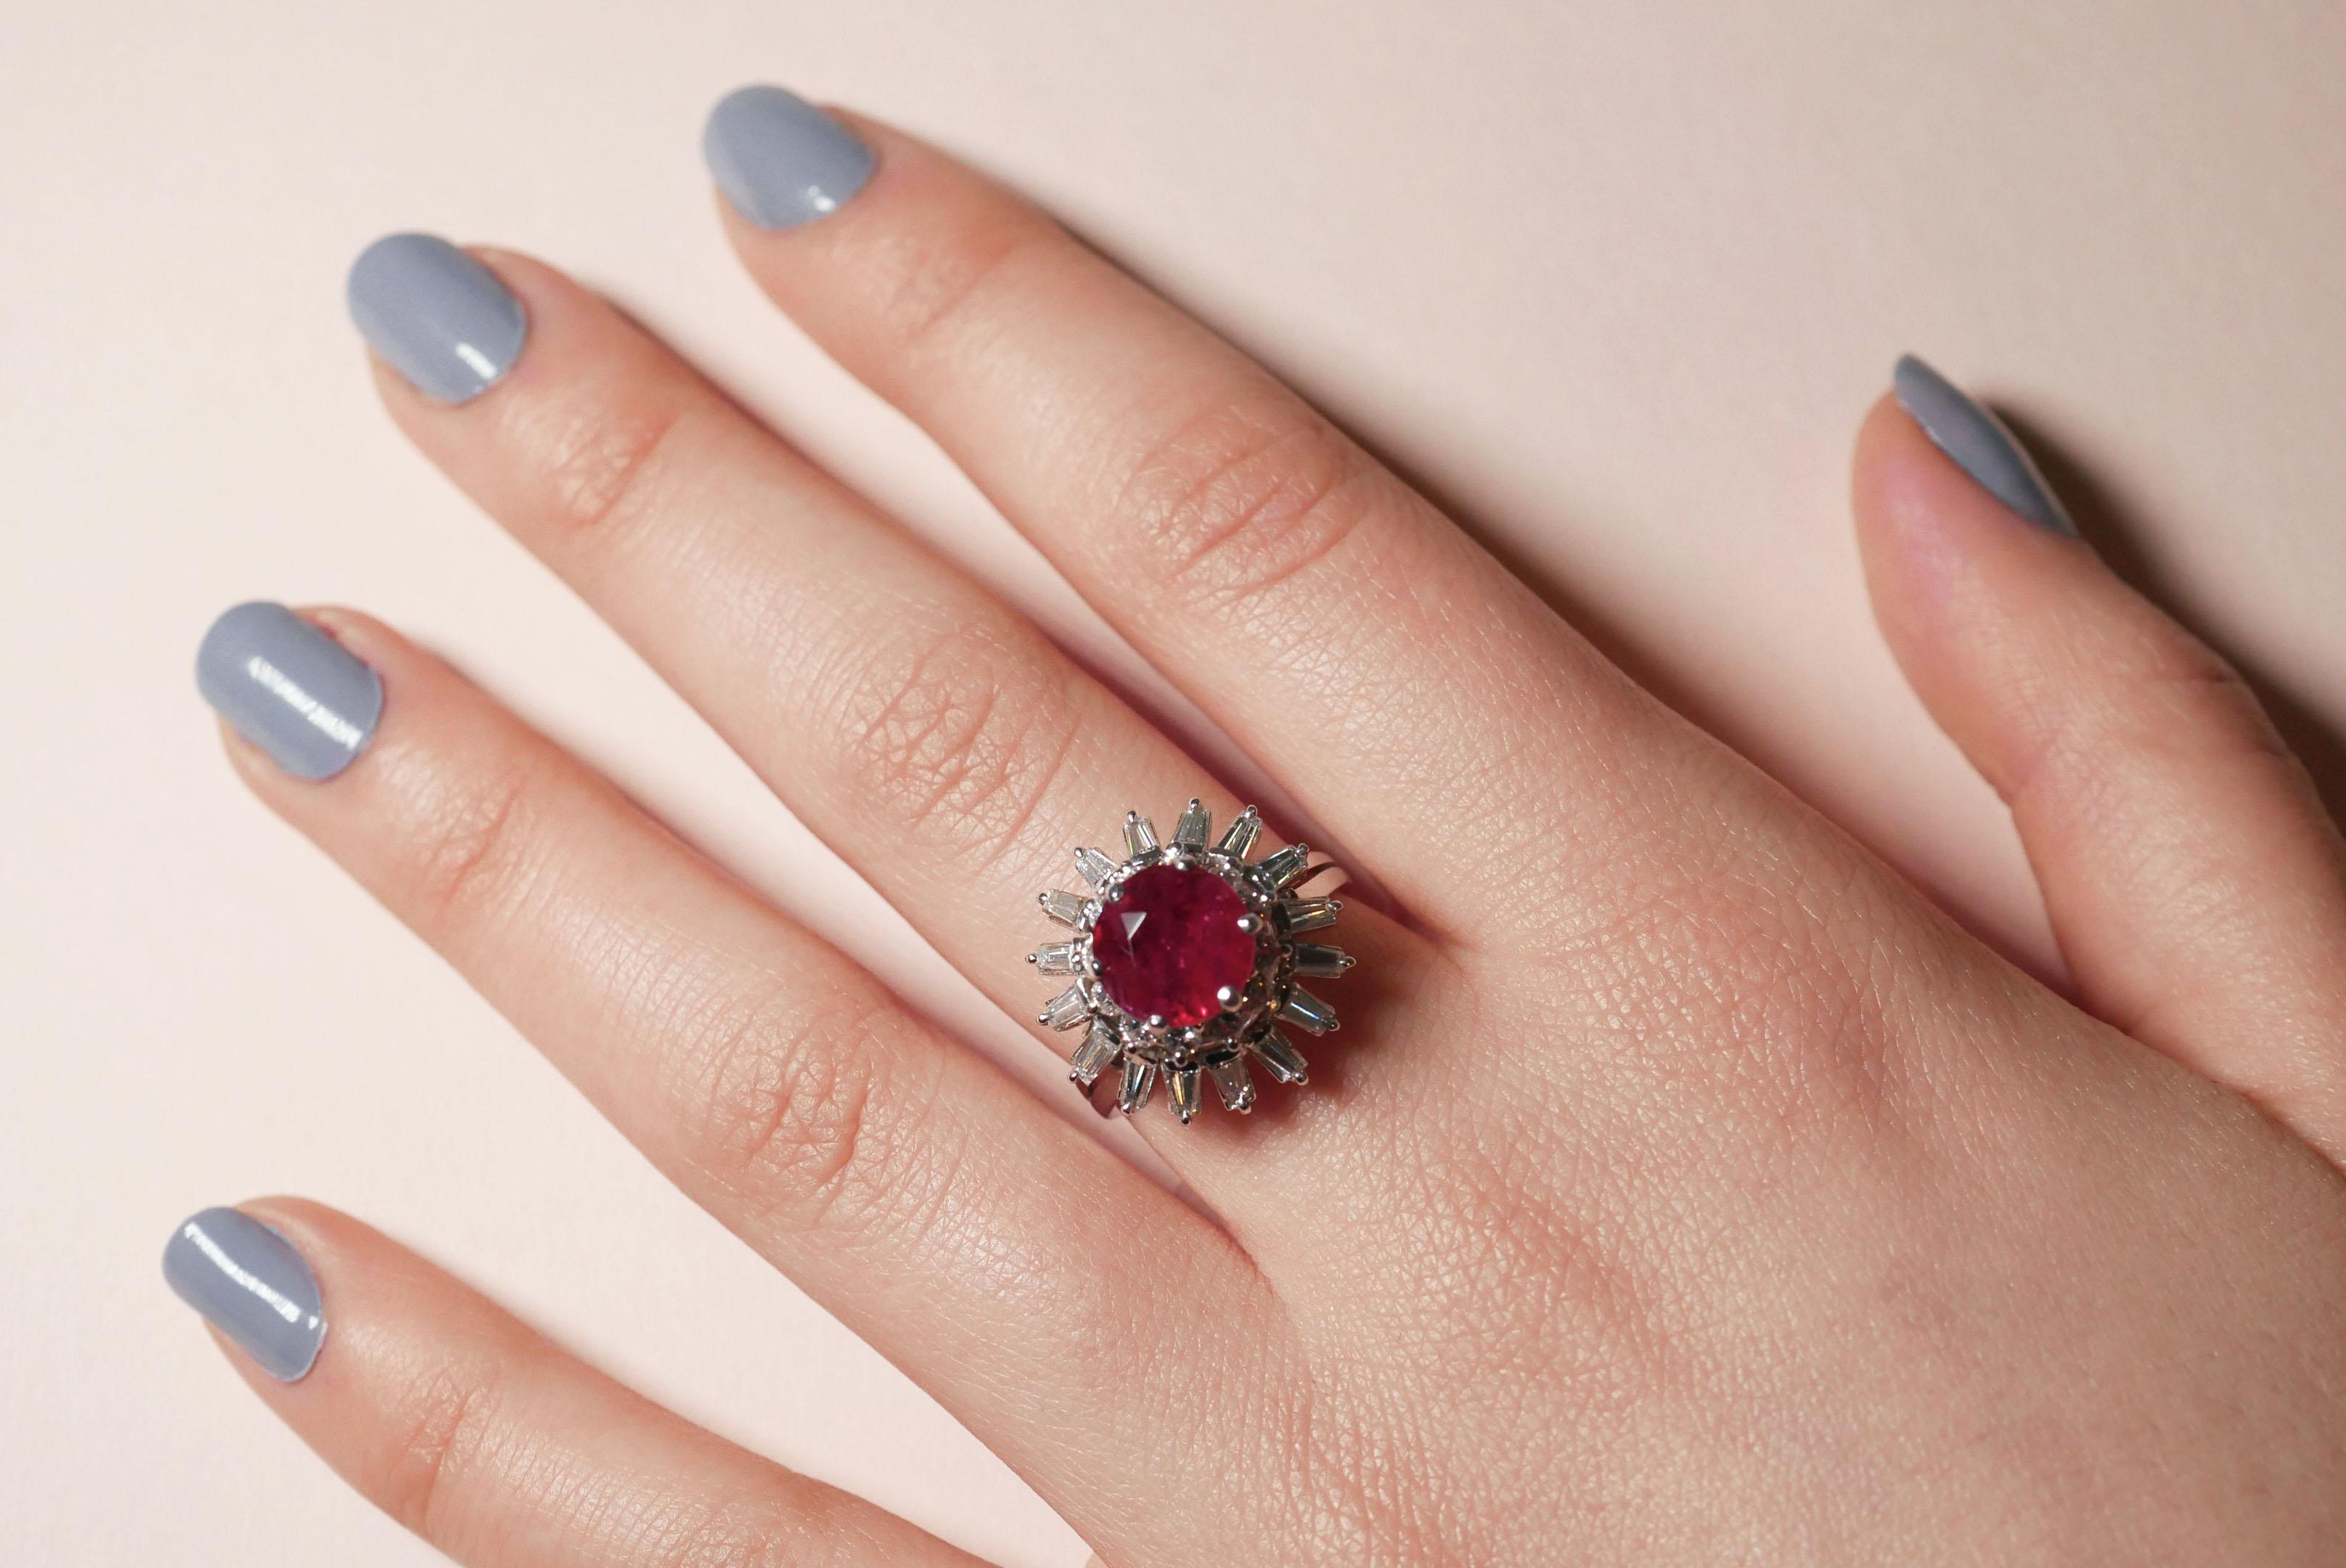 Dieser von der Haruni-Familie entworfene und gefertigte Ring macht die klassische Kombination von Rubinen und Diamanten noch ein wenig interessanter. Der Mittelstein ist ein runder Rubin in lebhaftem Rot, der von einem einzigartigen weißen